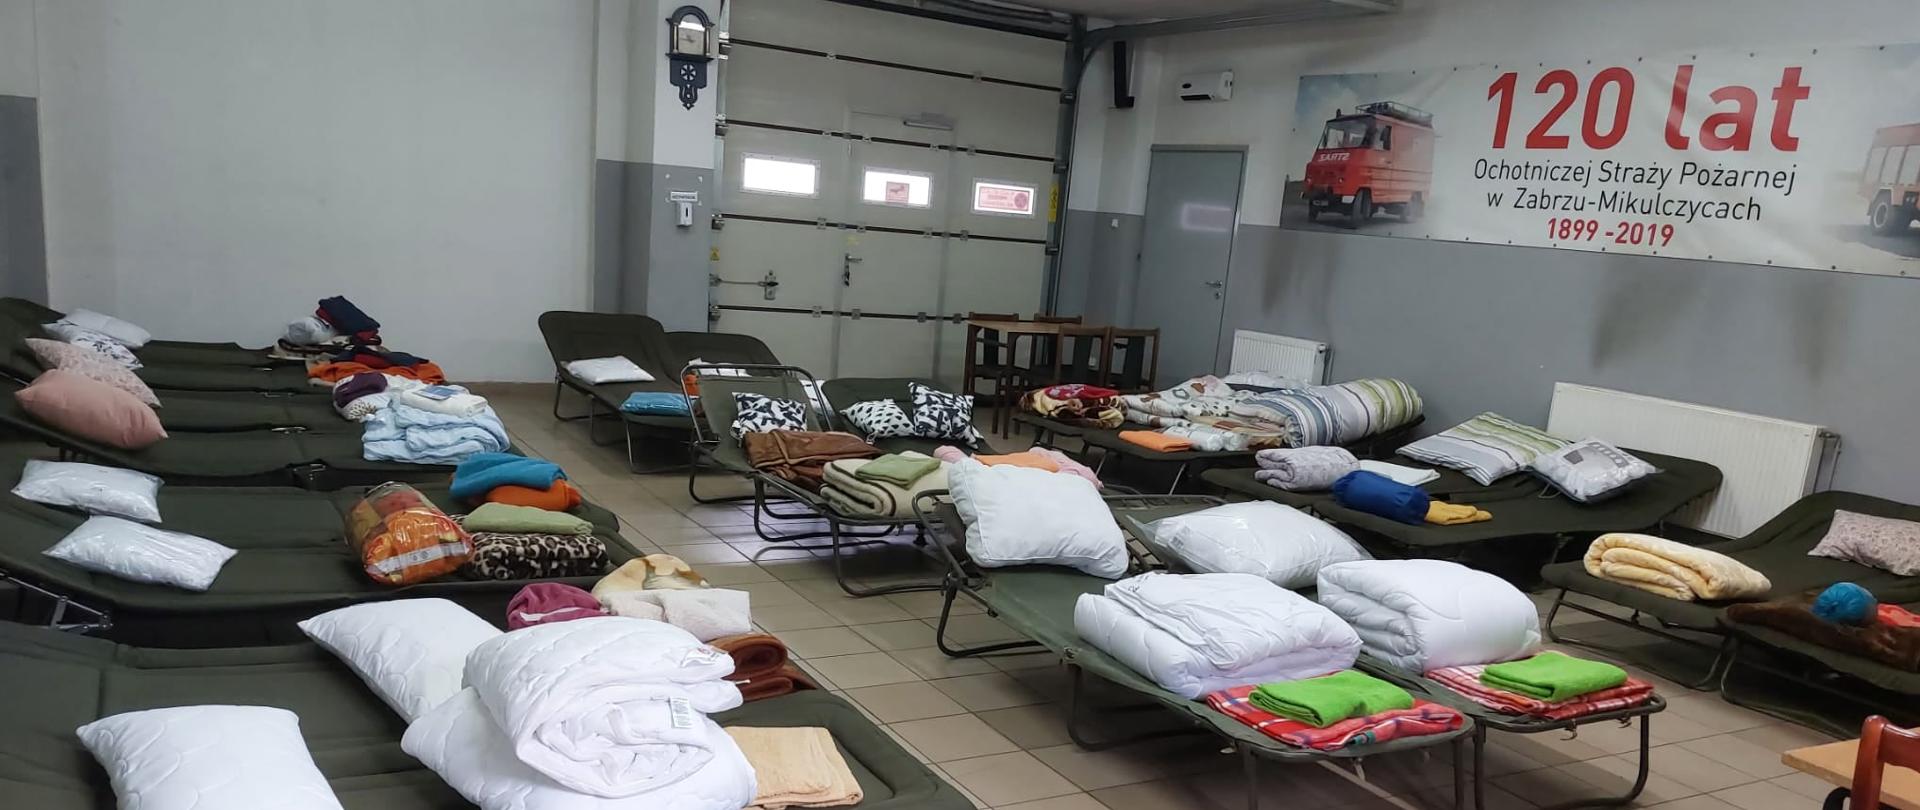 Łóżka polowe z przygotowanymi poduszkami i pościelami na świetlicy jednostki Ochotniczej Straży Pożarnej w Zabrzu Mikulczycach.